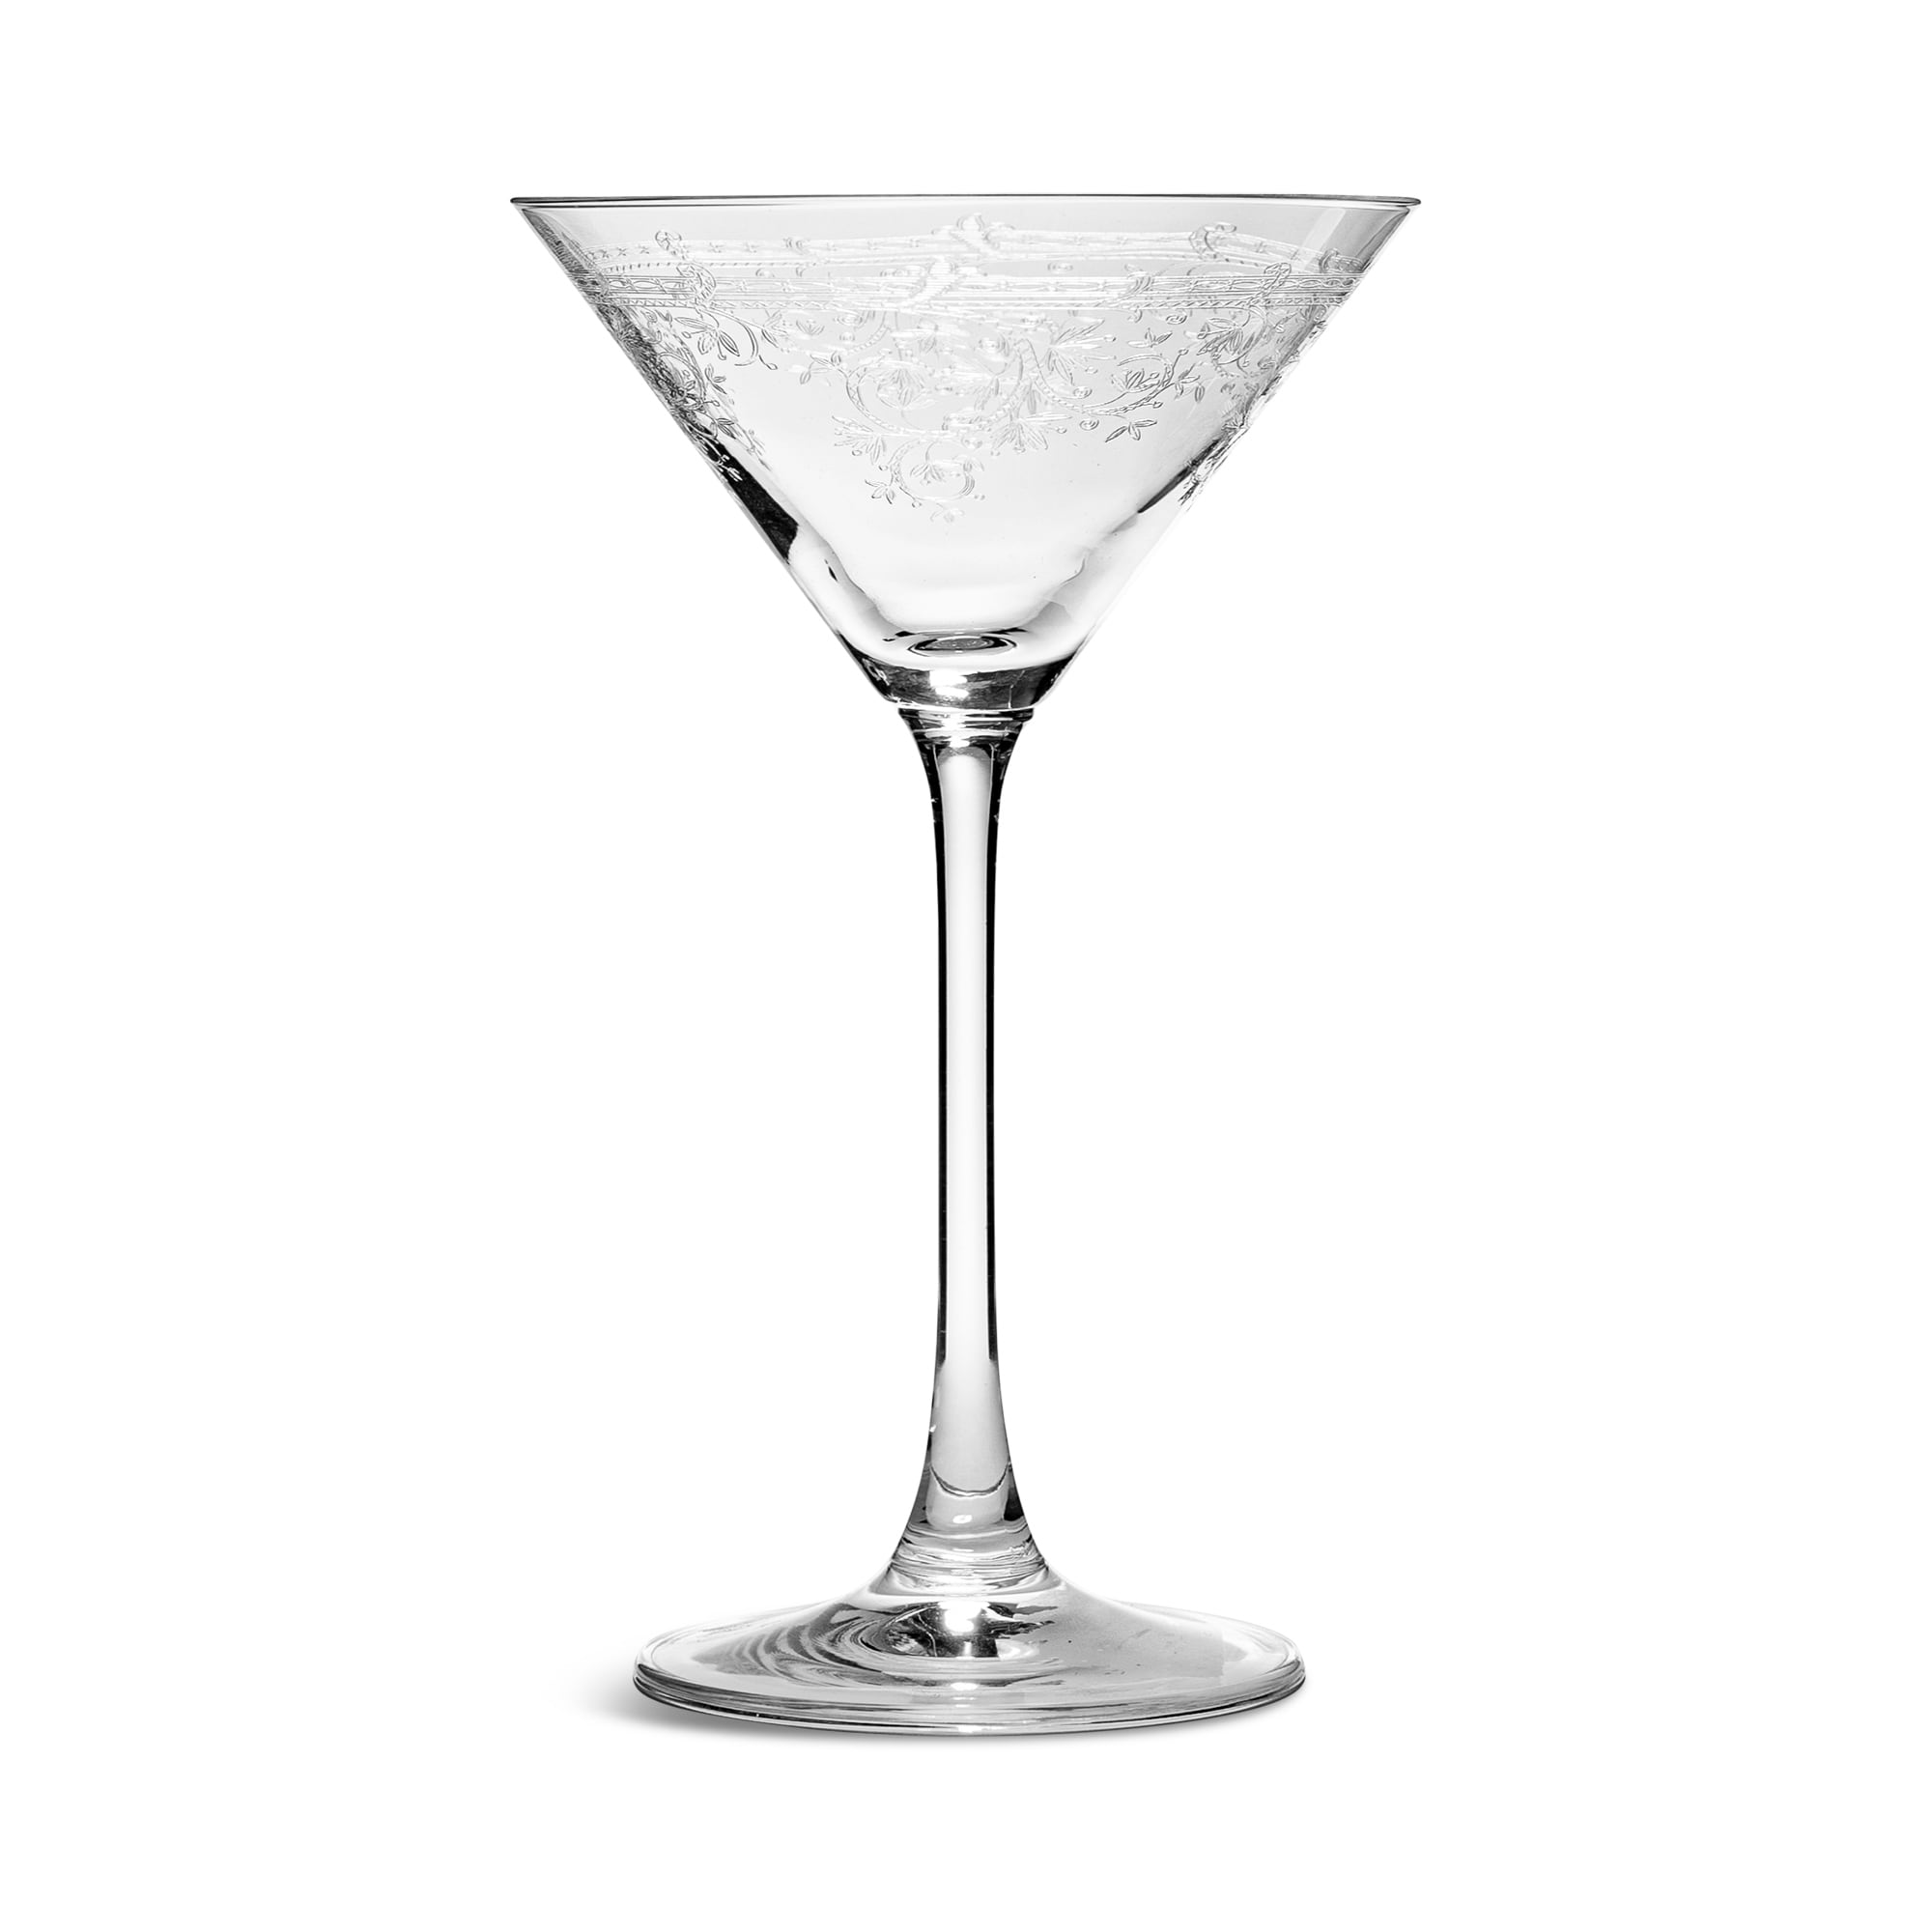 Martini Tipsy Turvy Spirits 180ml, set of 6